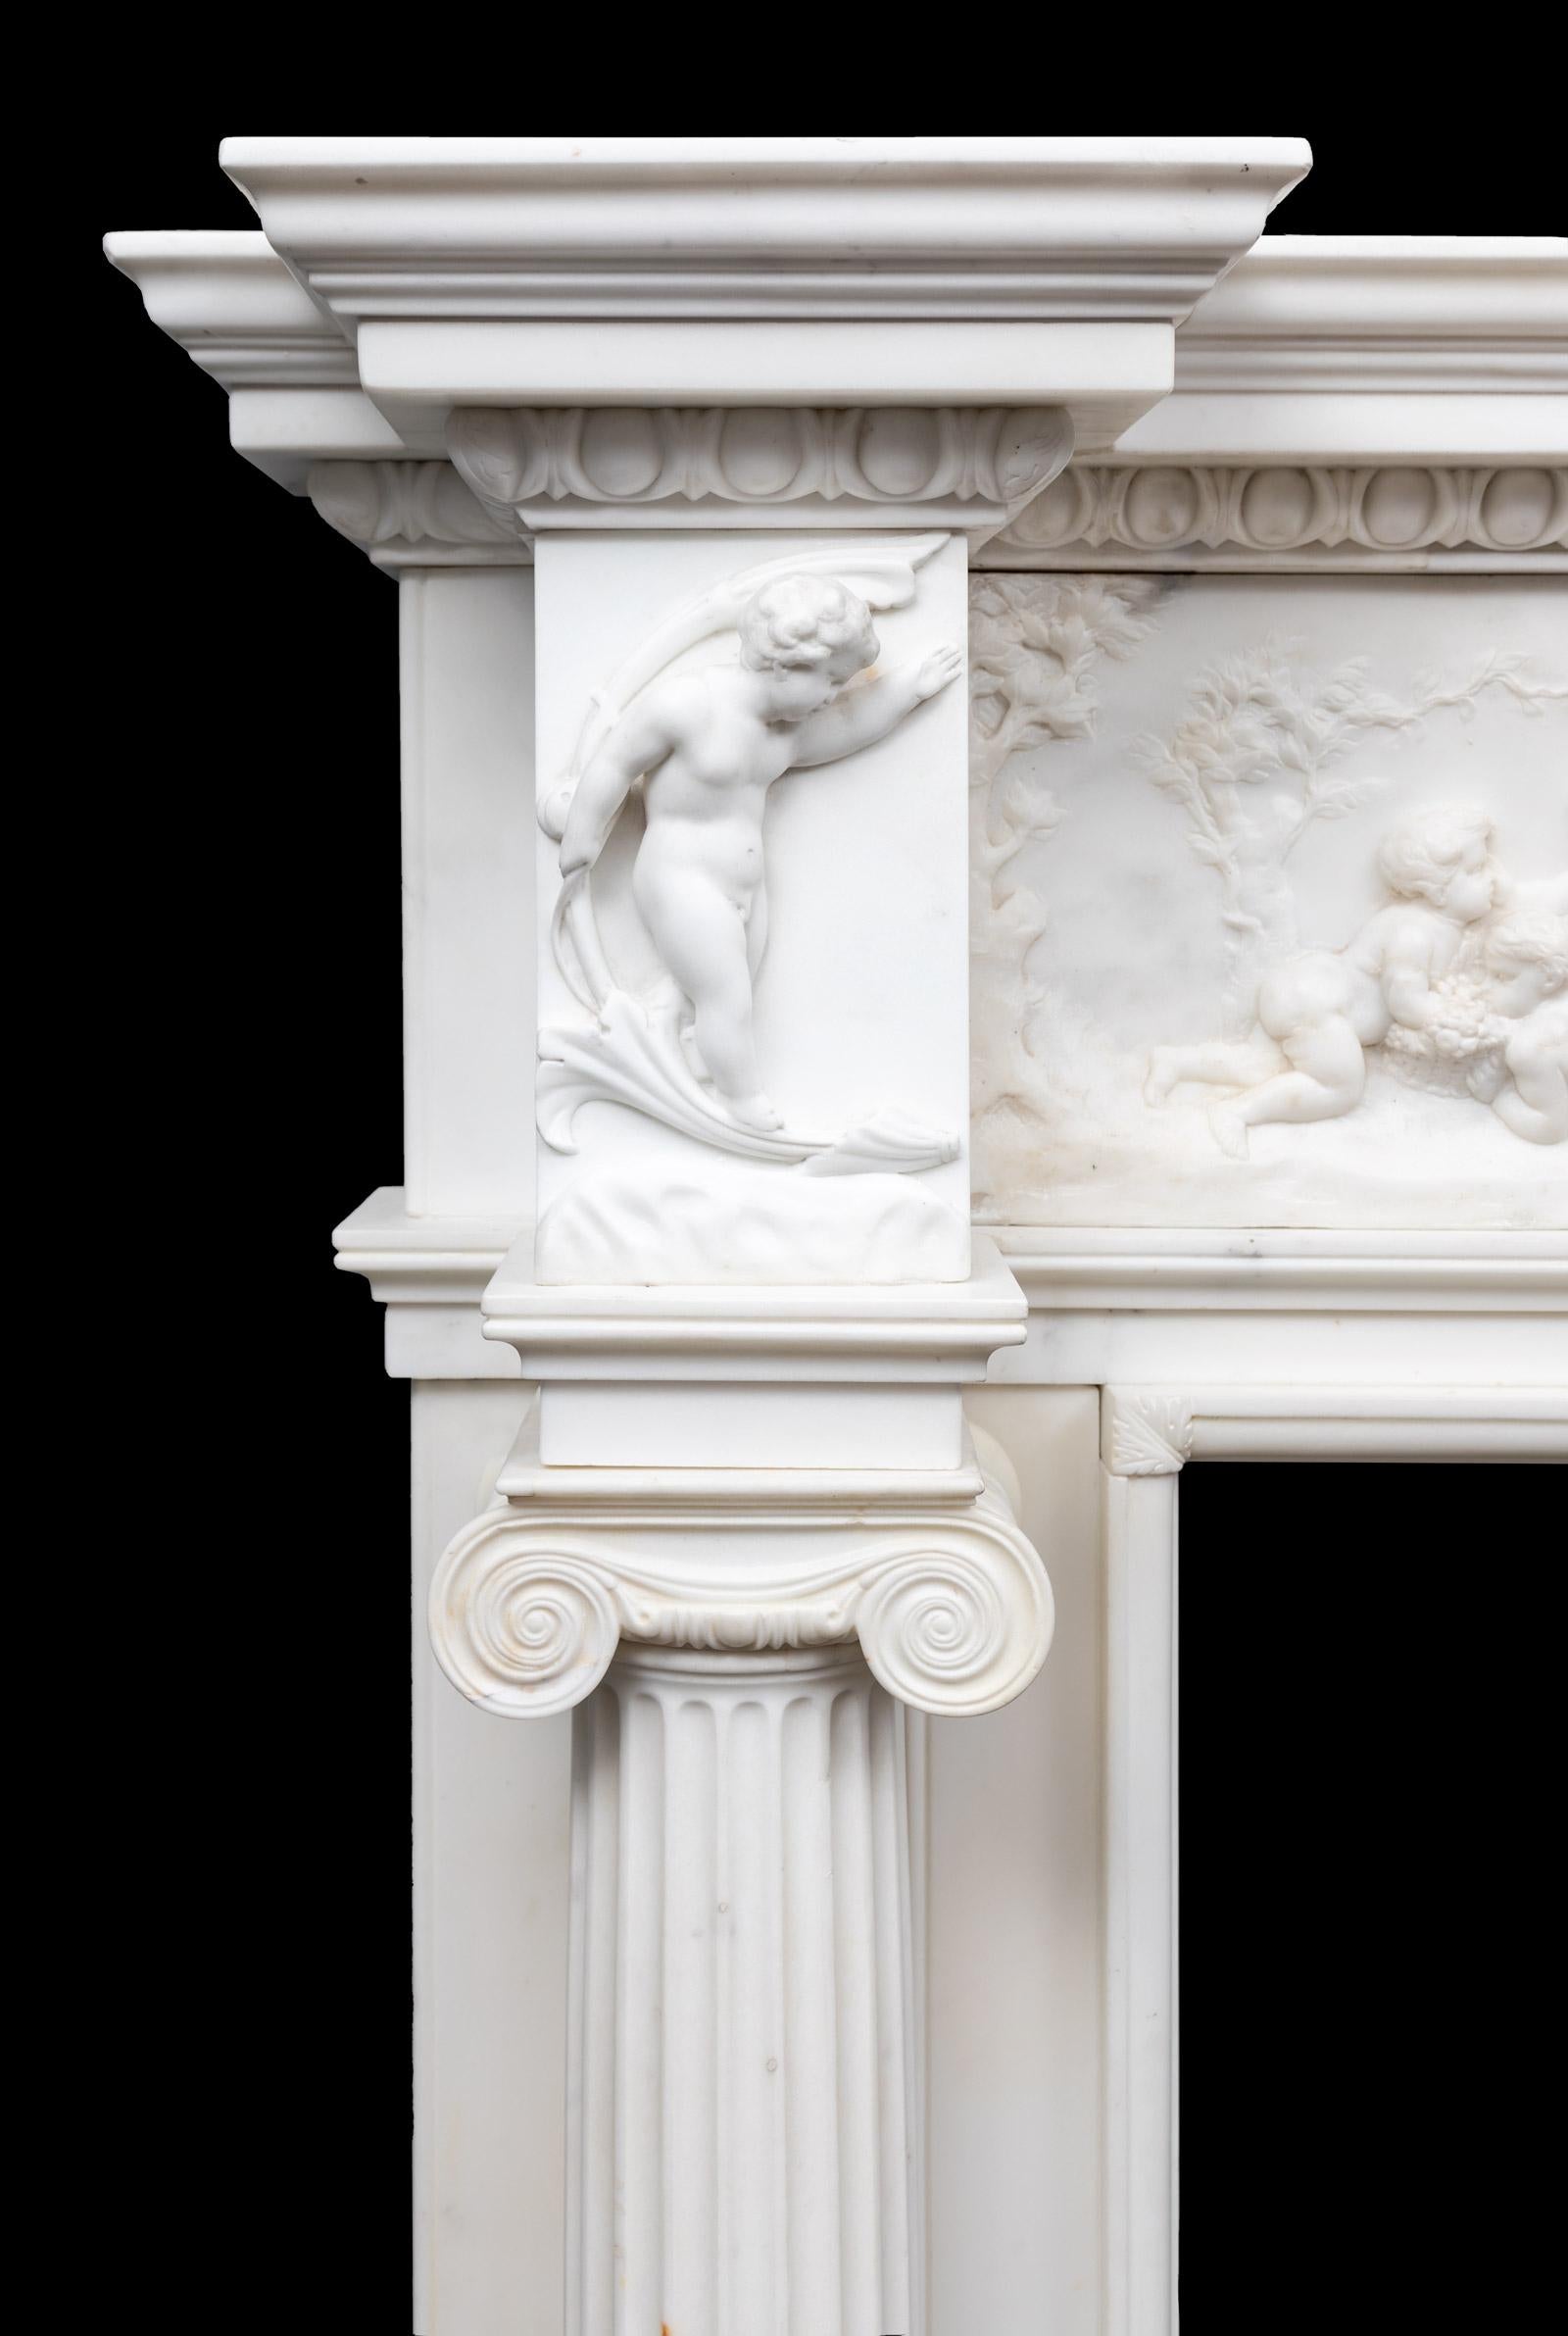 Exceptionnelle cheminée ancienne en marbre blanc statuaire sculpté de la fin de la période géorgienne.
Avec des colonnes ioniques cannelées et libres sous des blocs d'angle sculptés en forme de putti. Une importante corniche en forme d'œuf et de